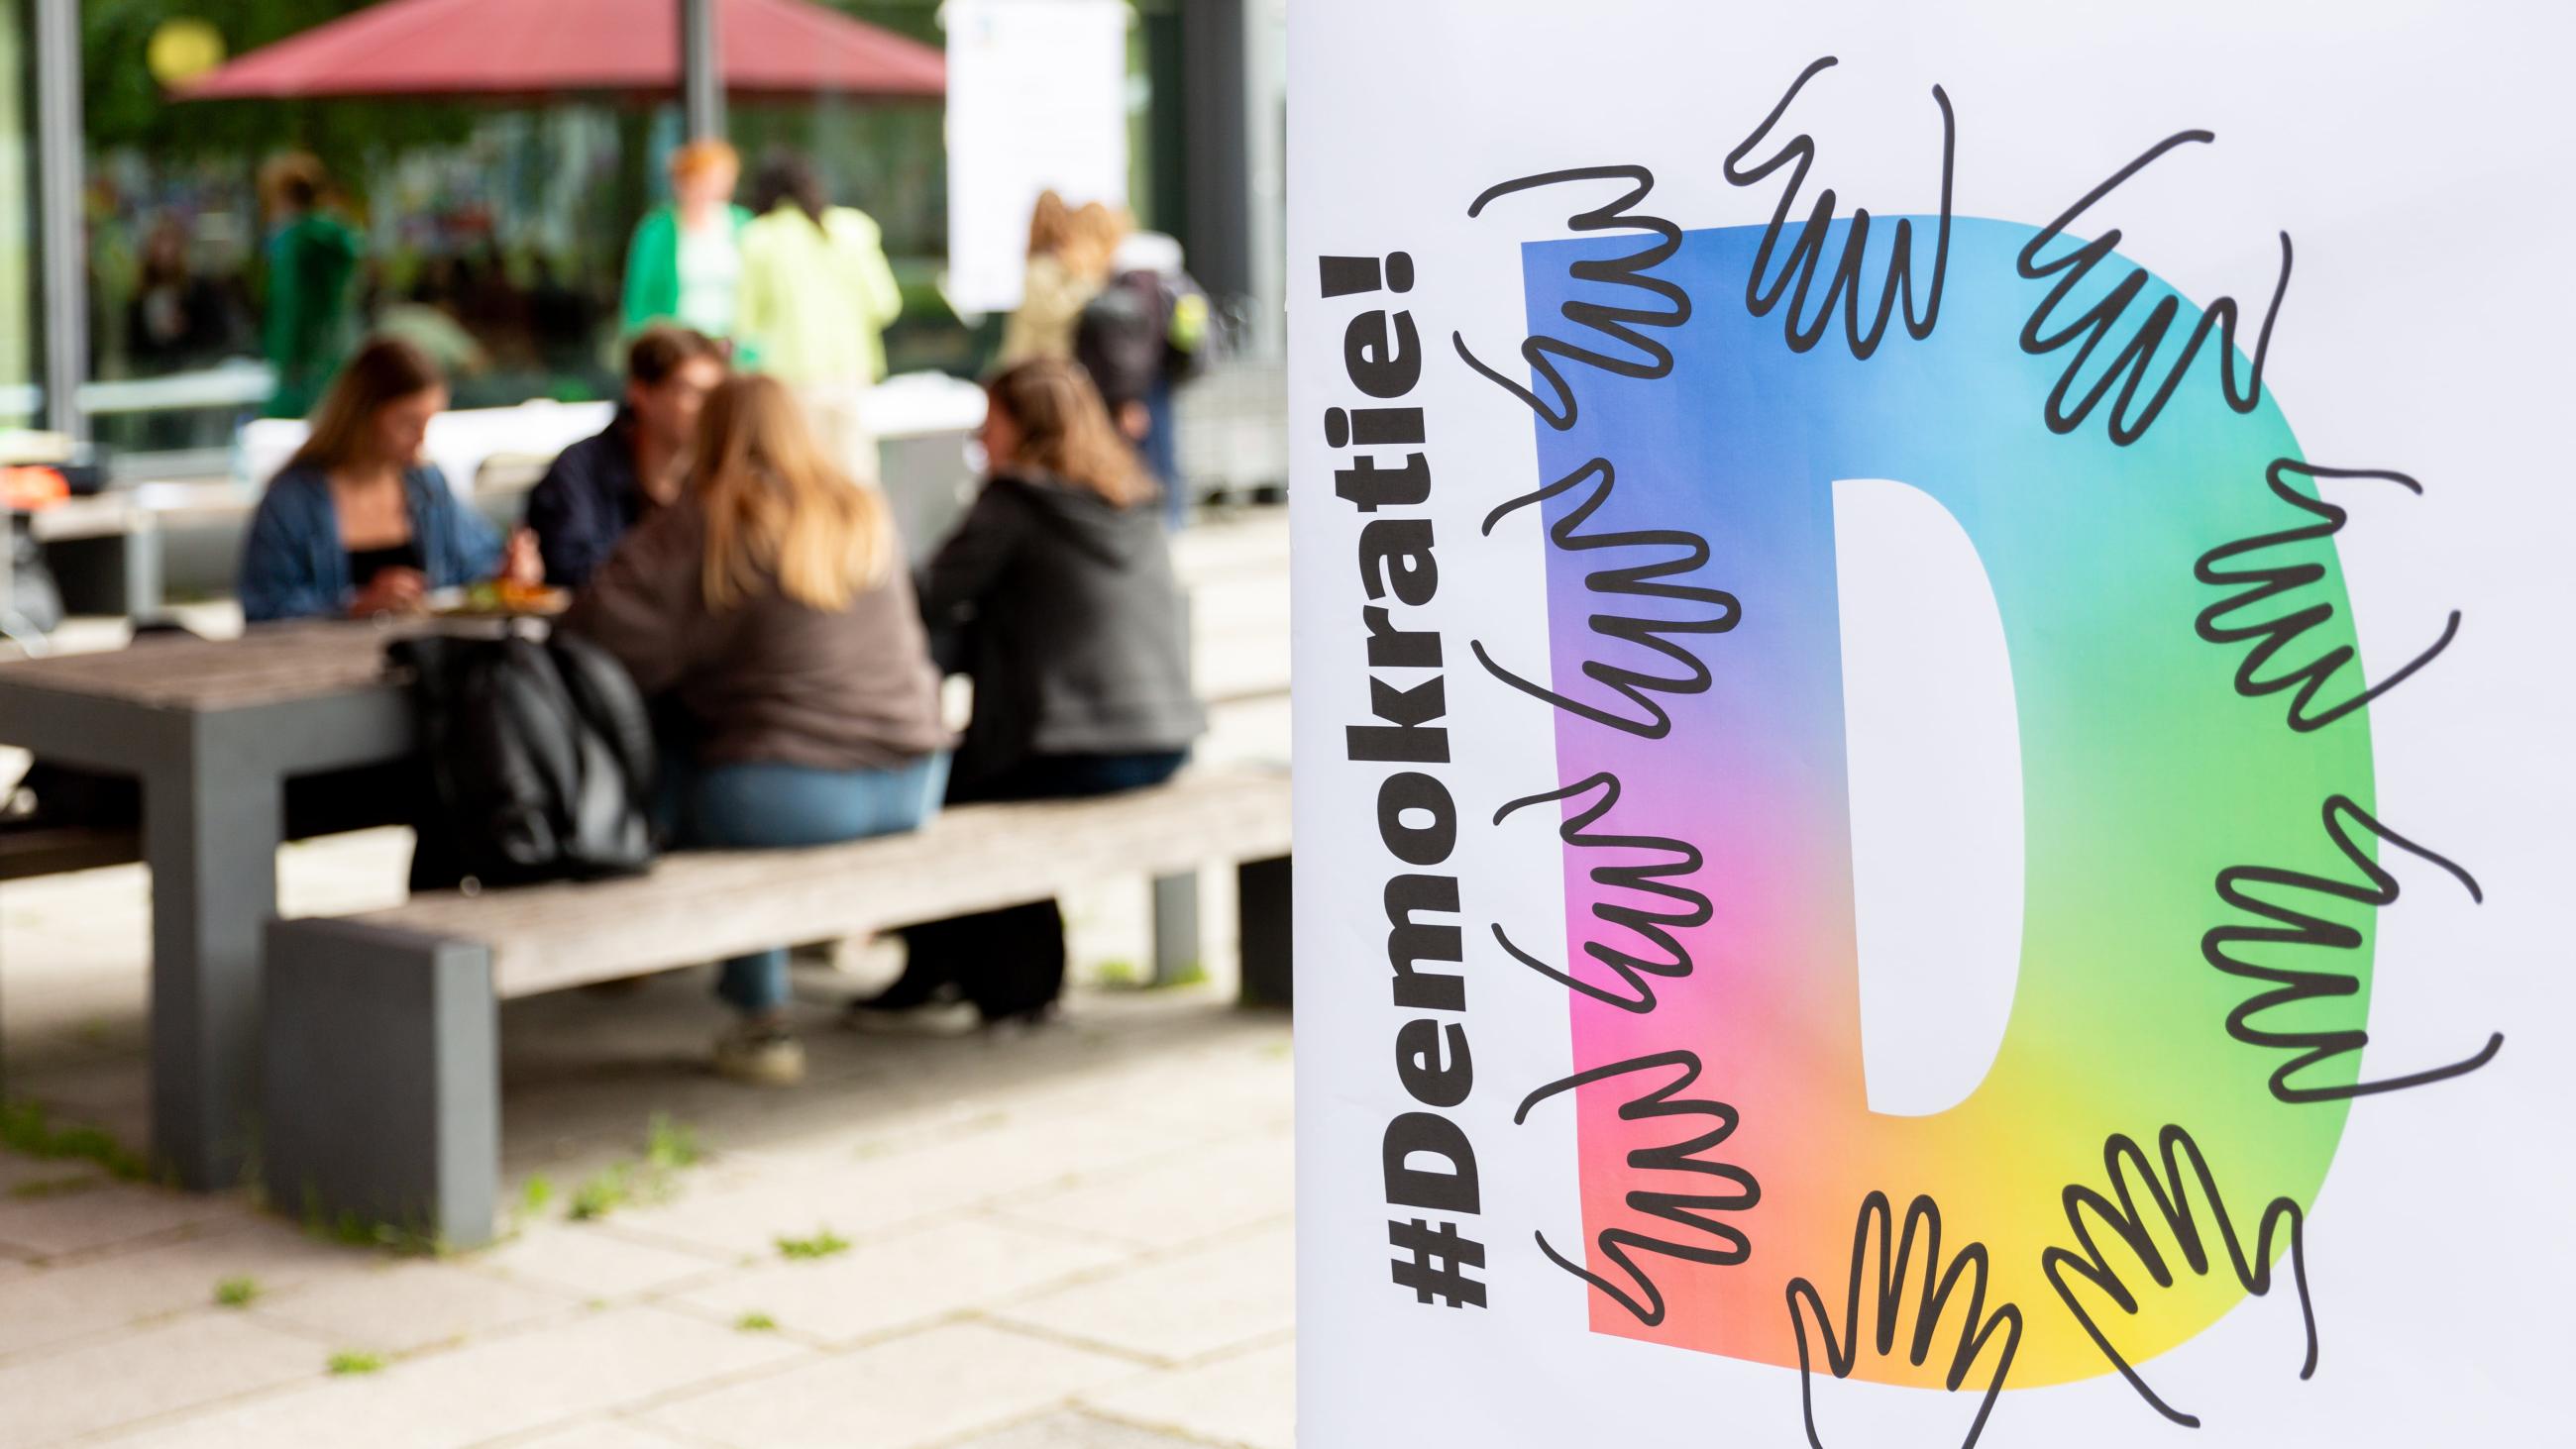 Personen sitzten auf einer Bank vor der Mensa, davor ein Plakat mit dem Titel "Hashtag Demokratie"